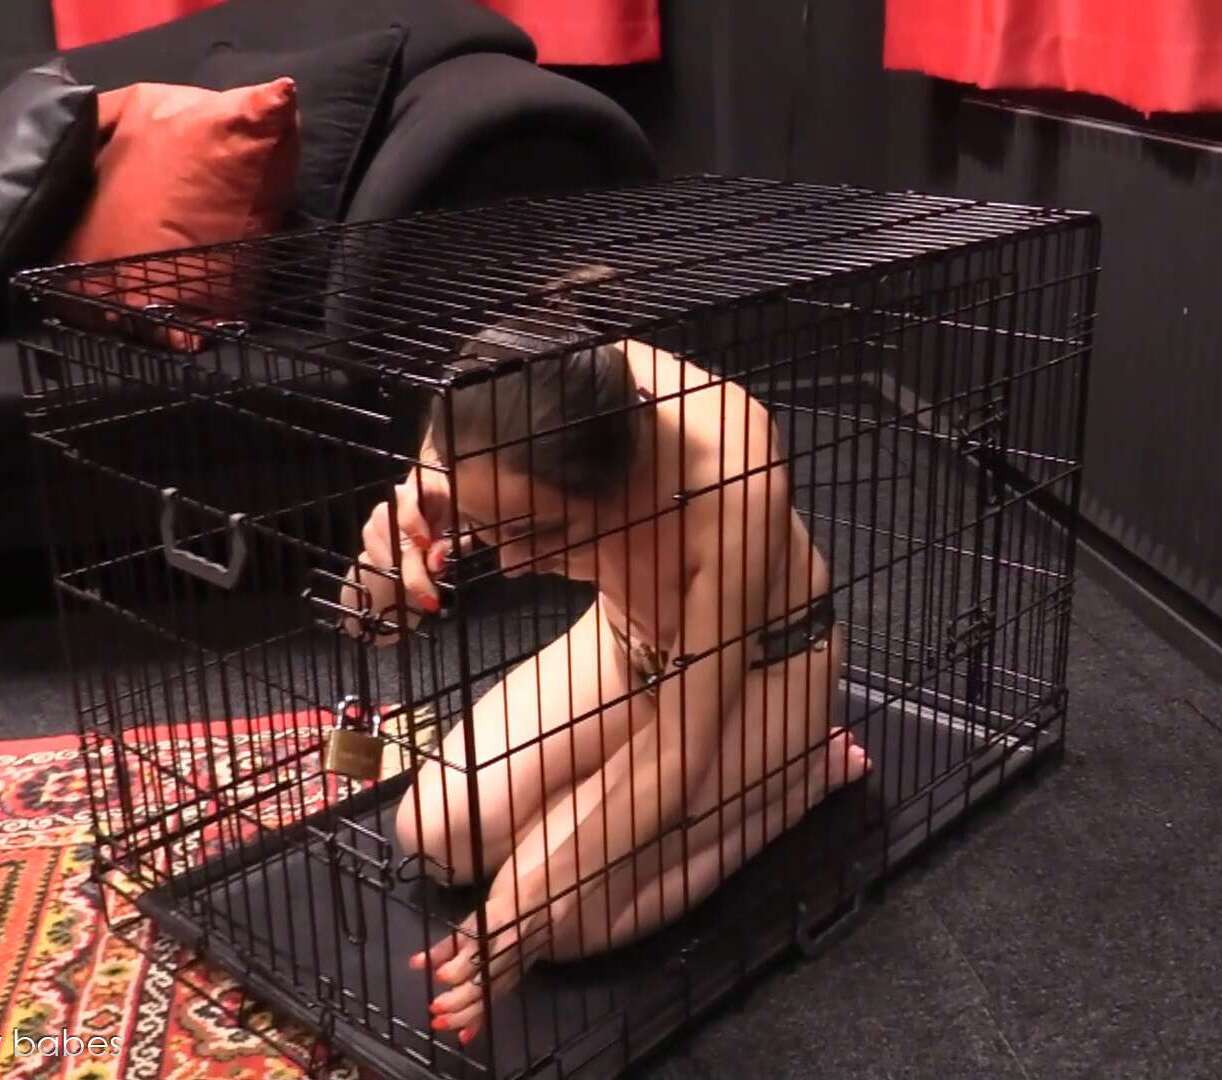 Emilia - cage testing